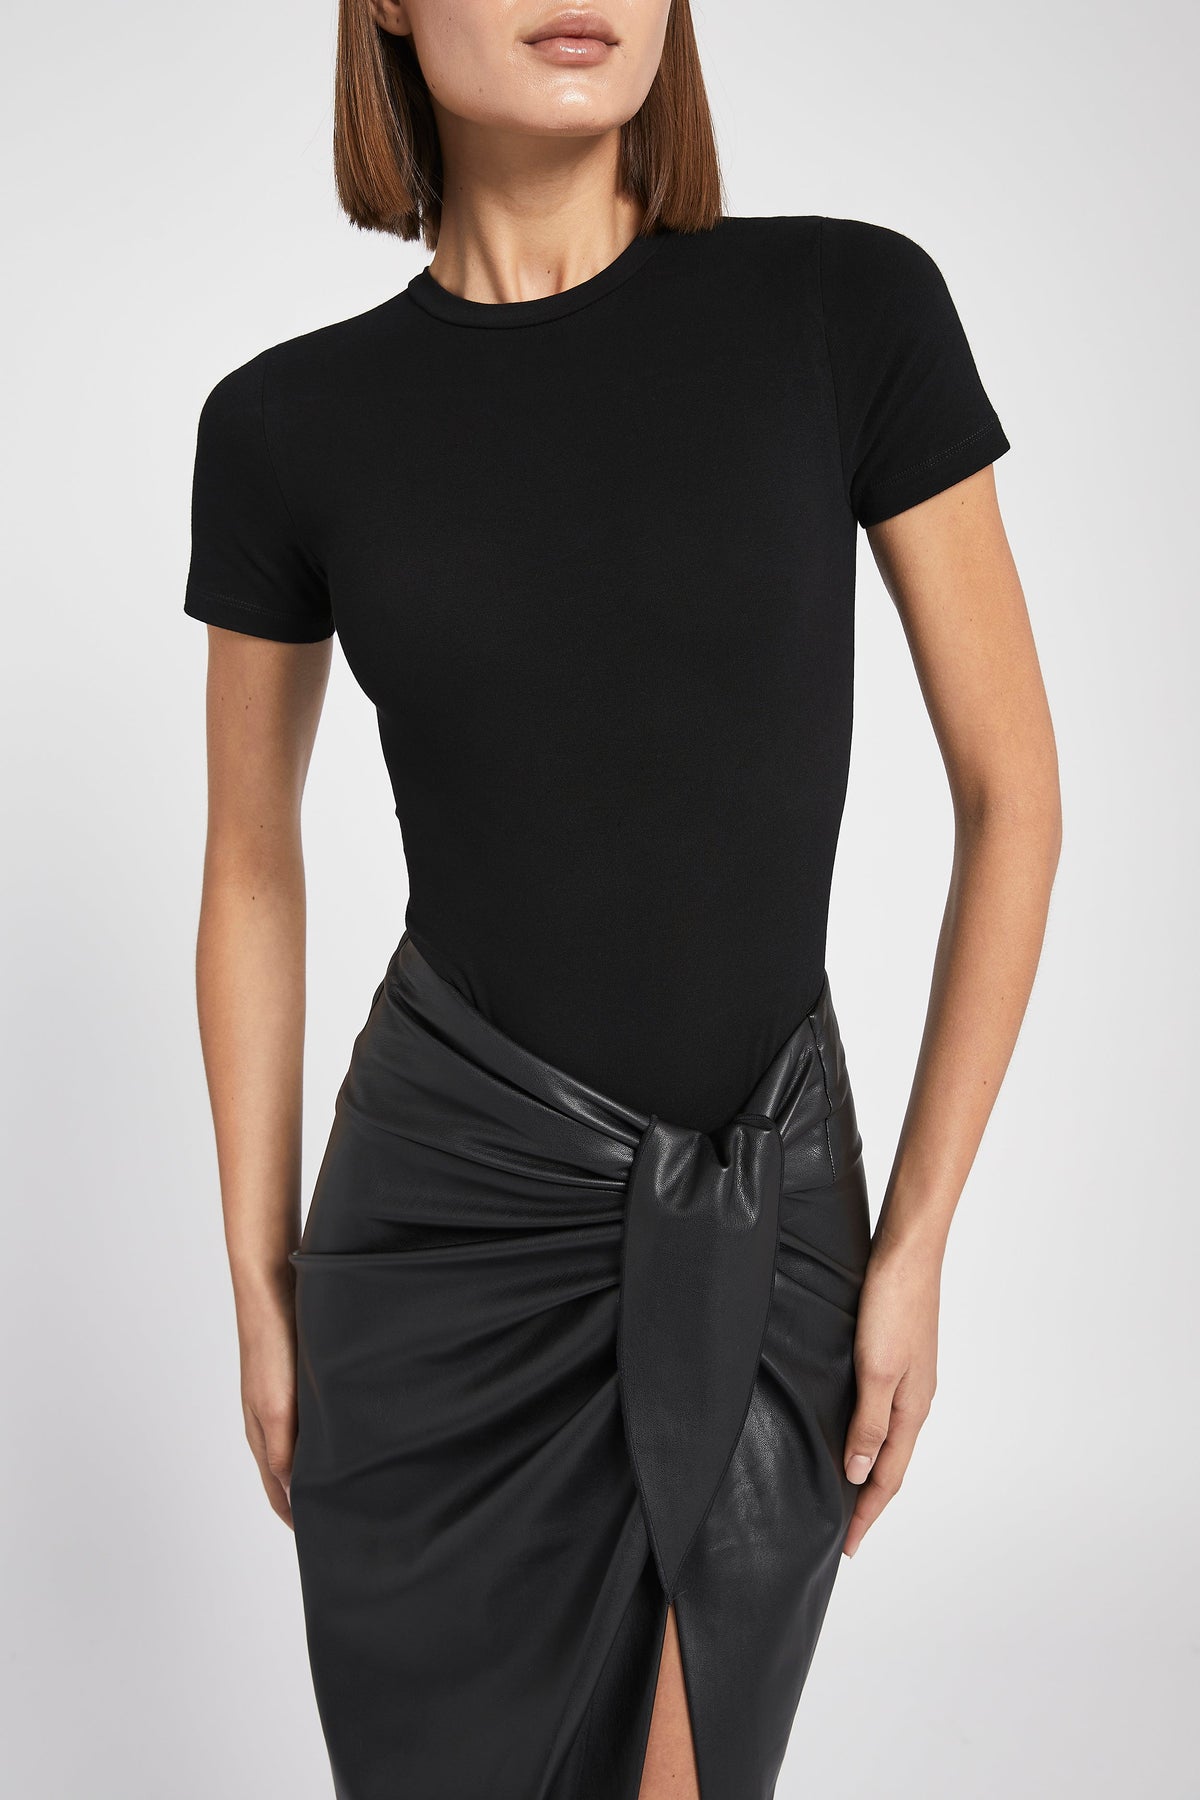 Cotton T Shirt Bodysuit - Black